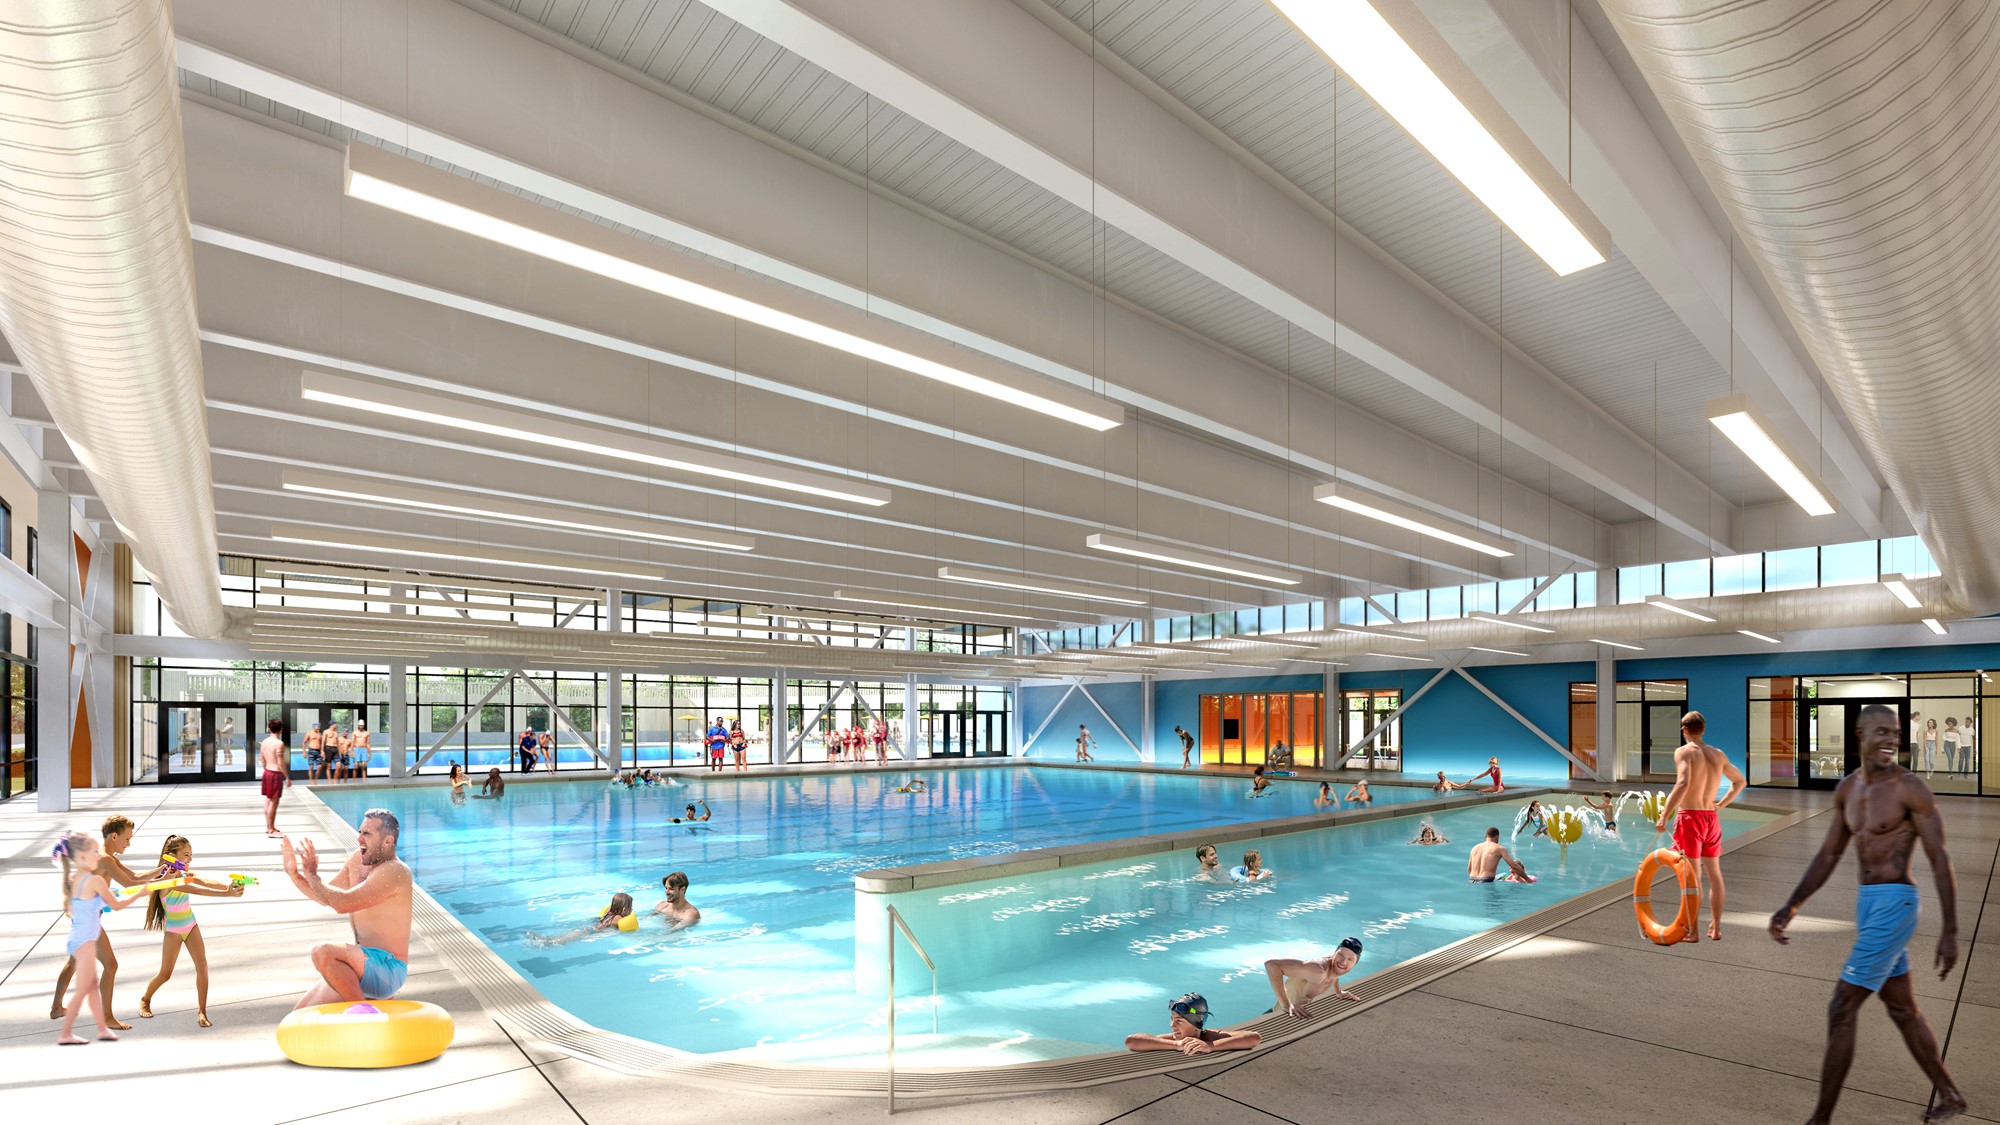 Pool Design - Indoor